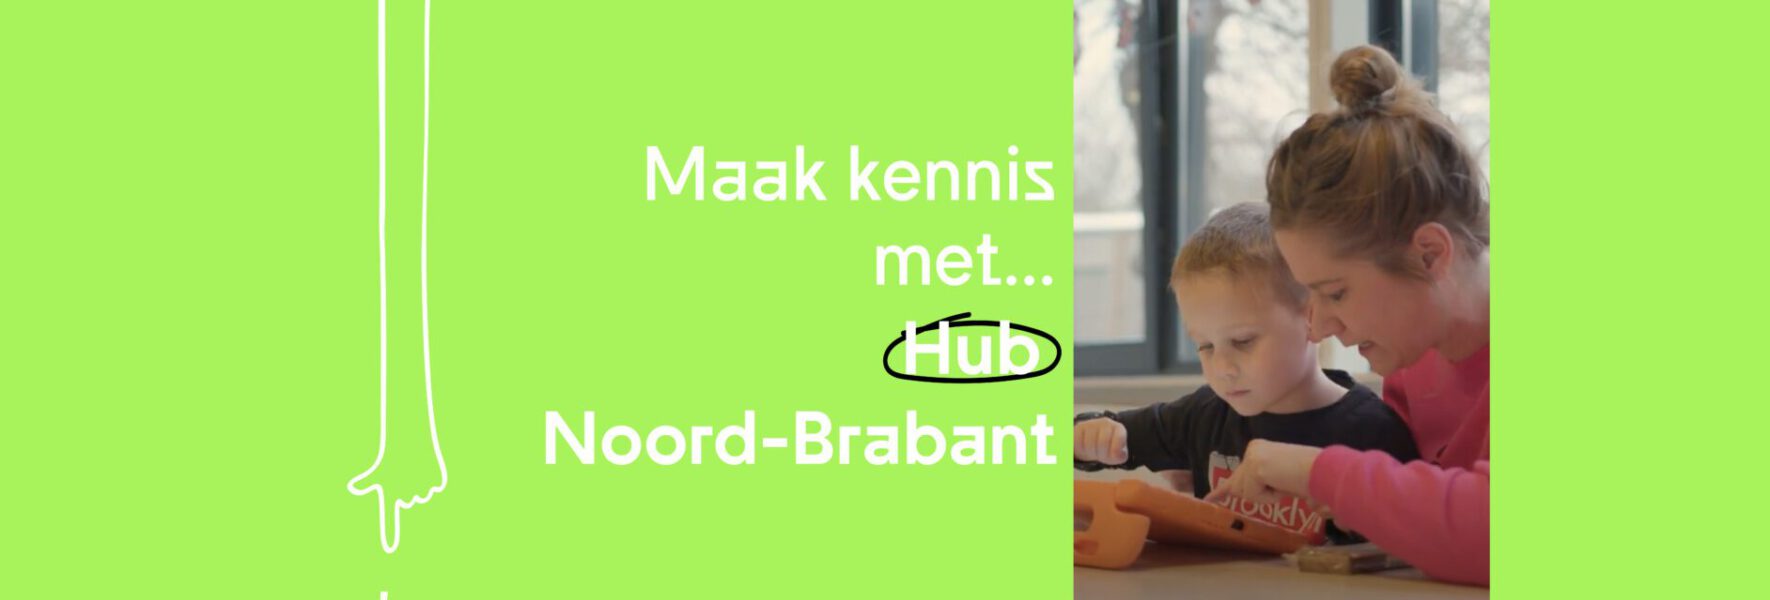 Hub Nood-Brabant